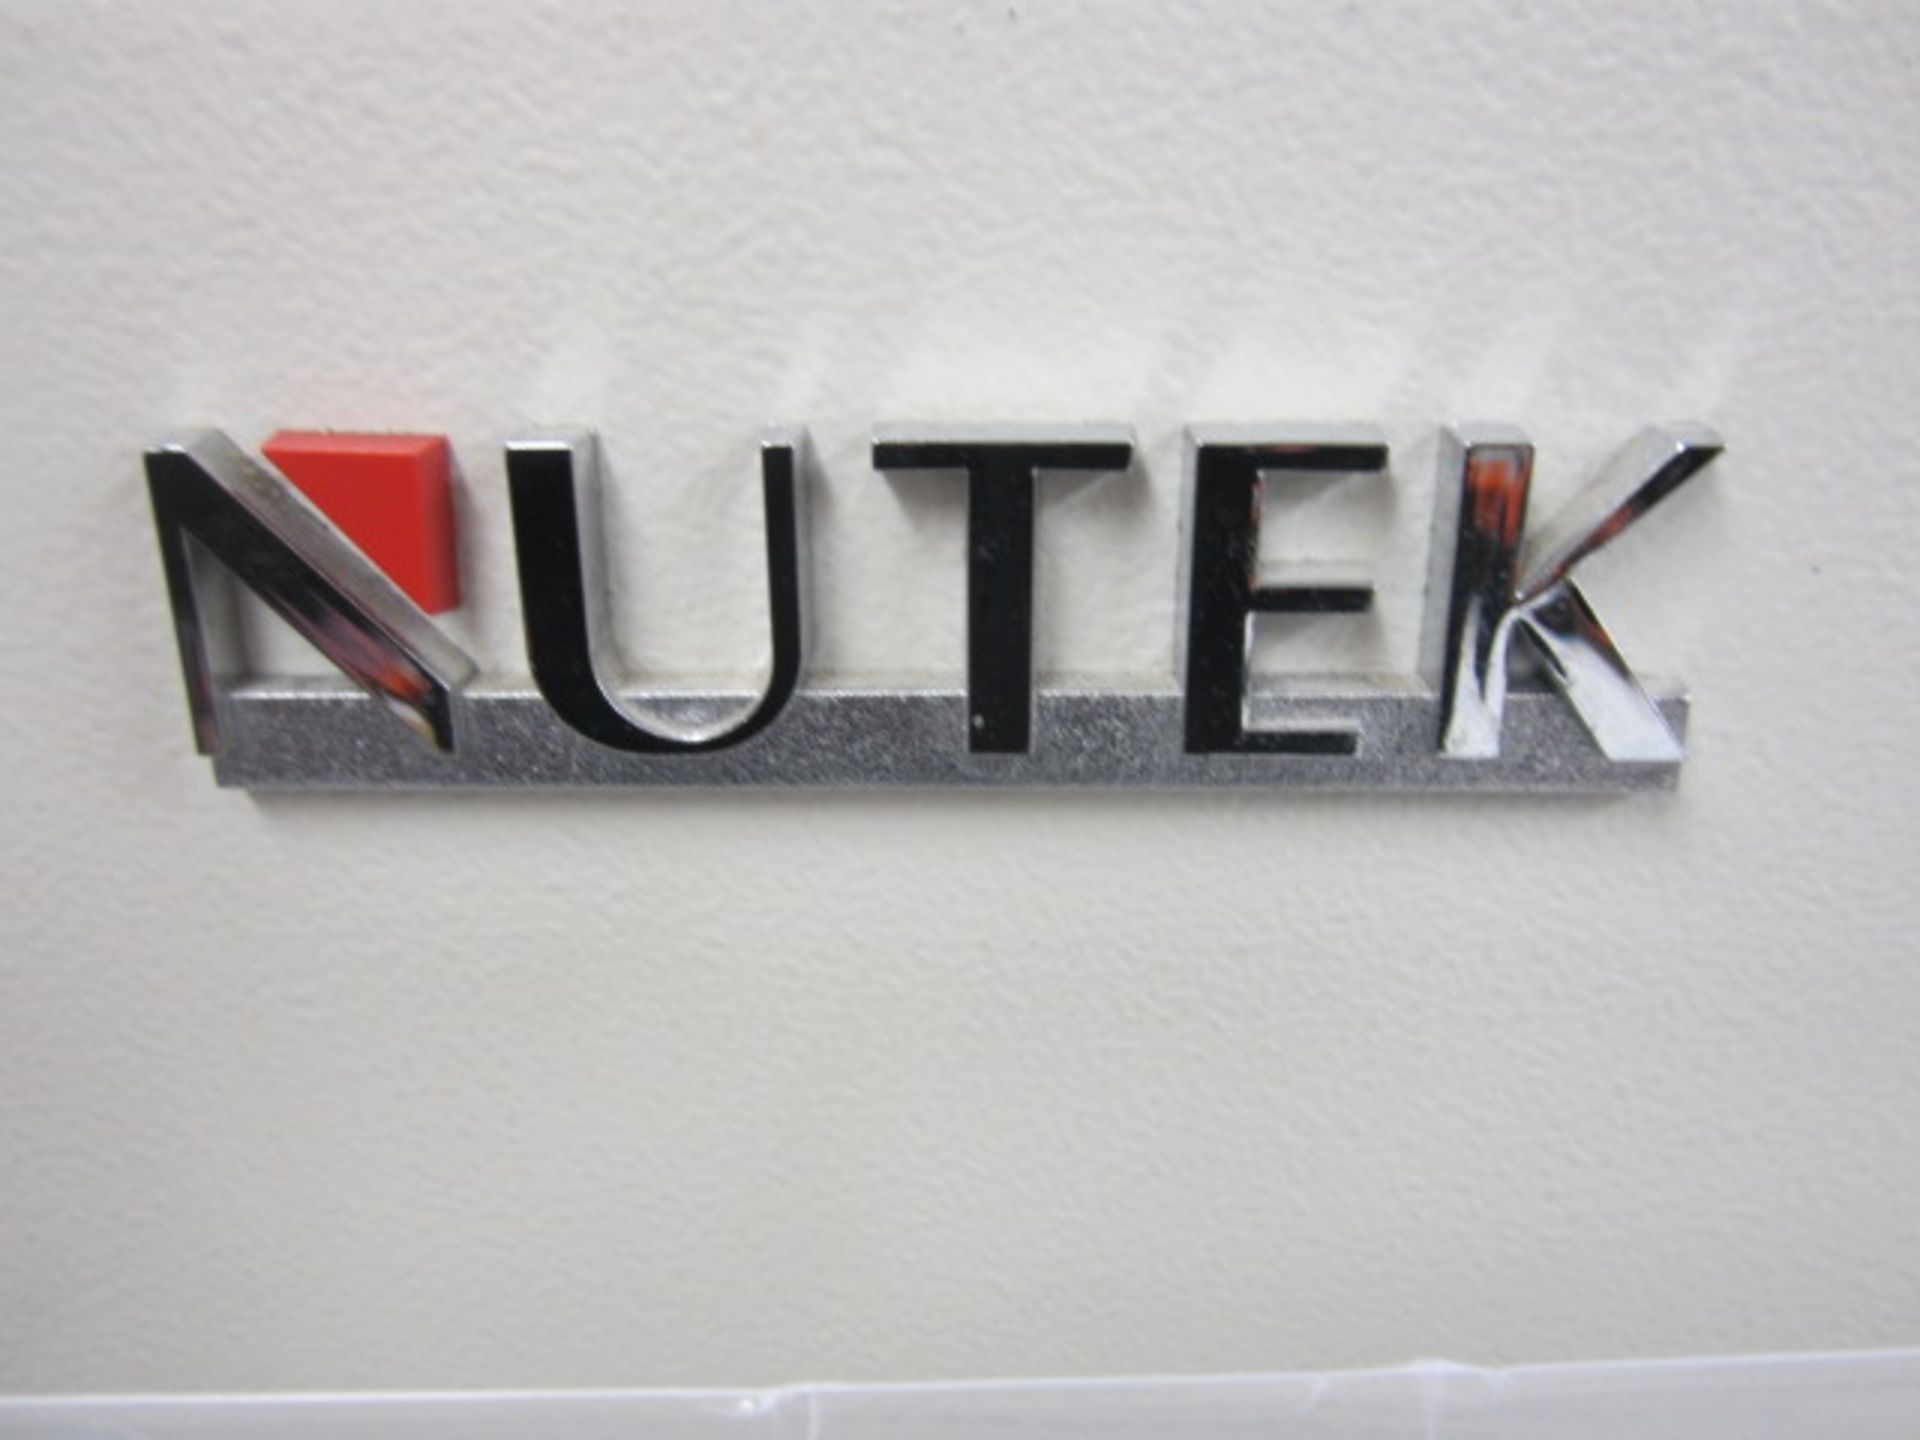 Nutek PTE Ltd PCB board Loader/Unloader, model no: NTN200BM, serial no: 2006-C418A01 (2006). - Image 4 of 4